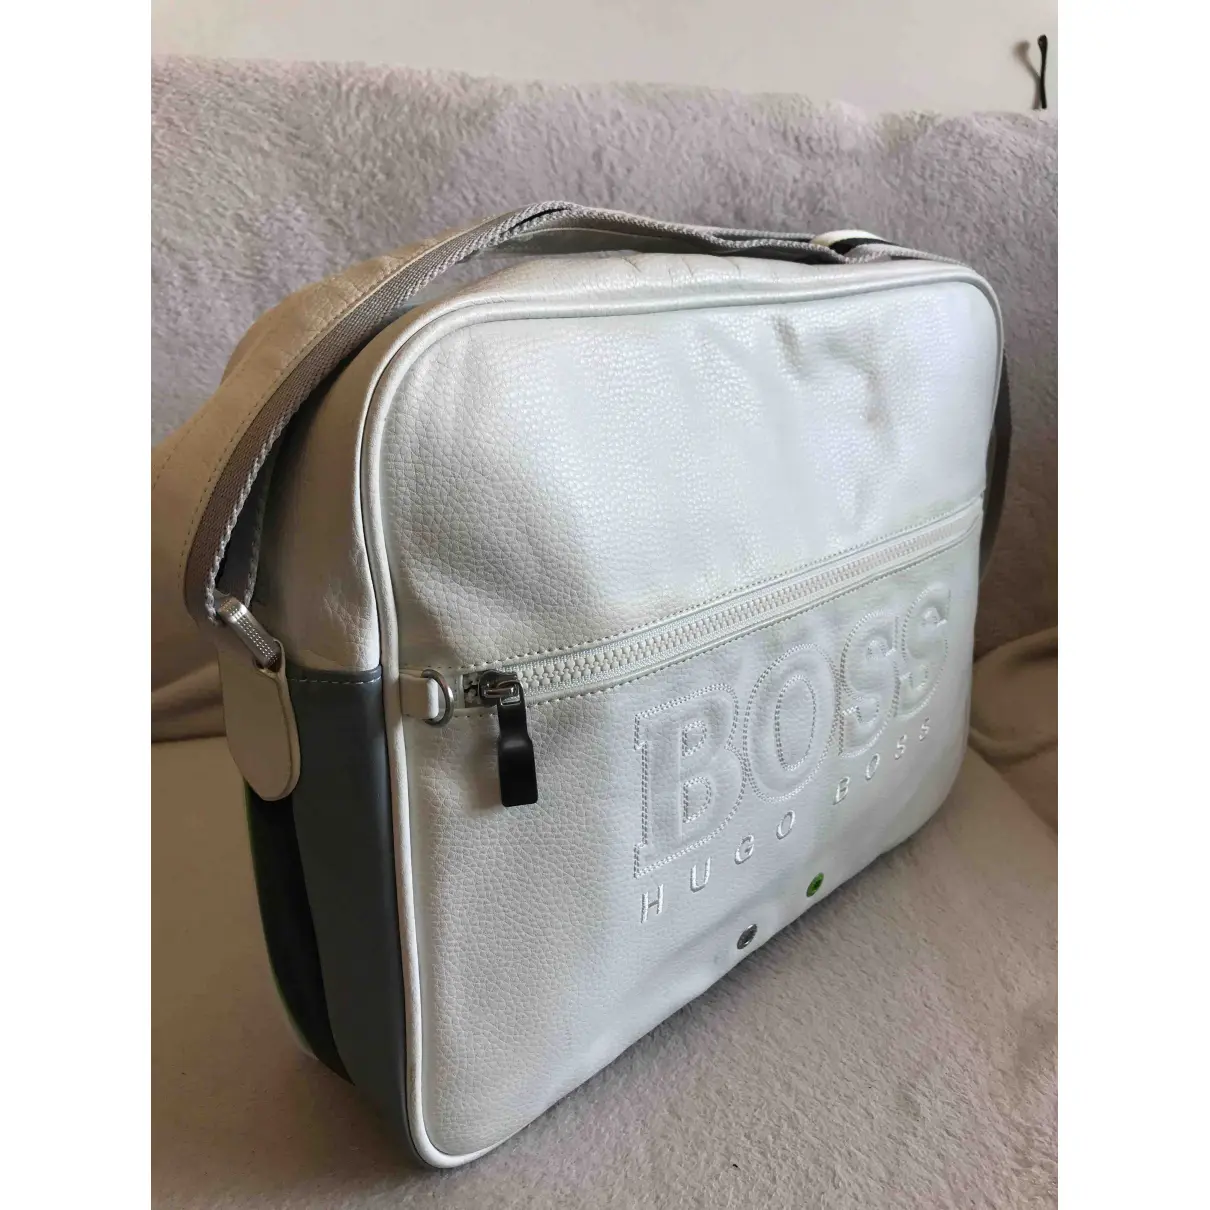 Buy Boss Travel bag online